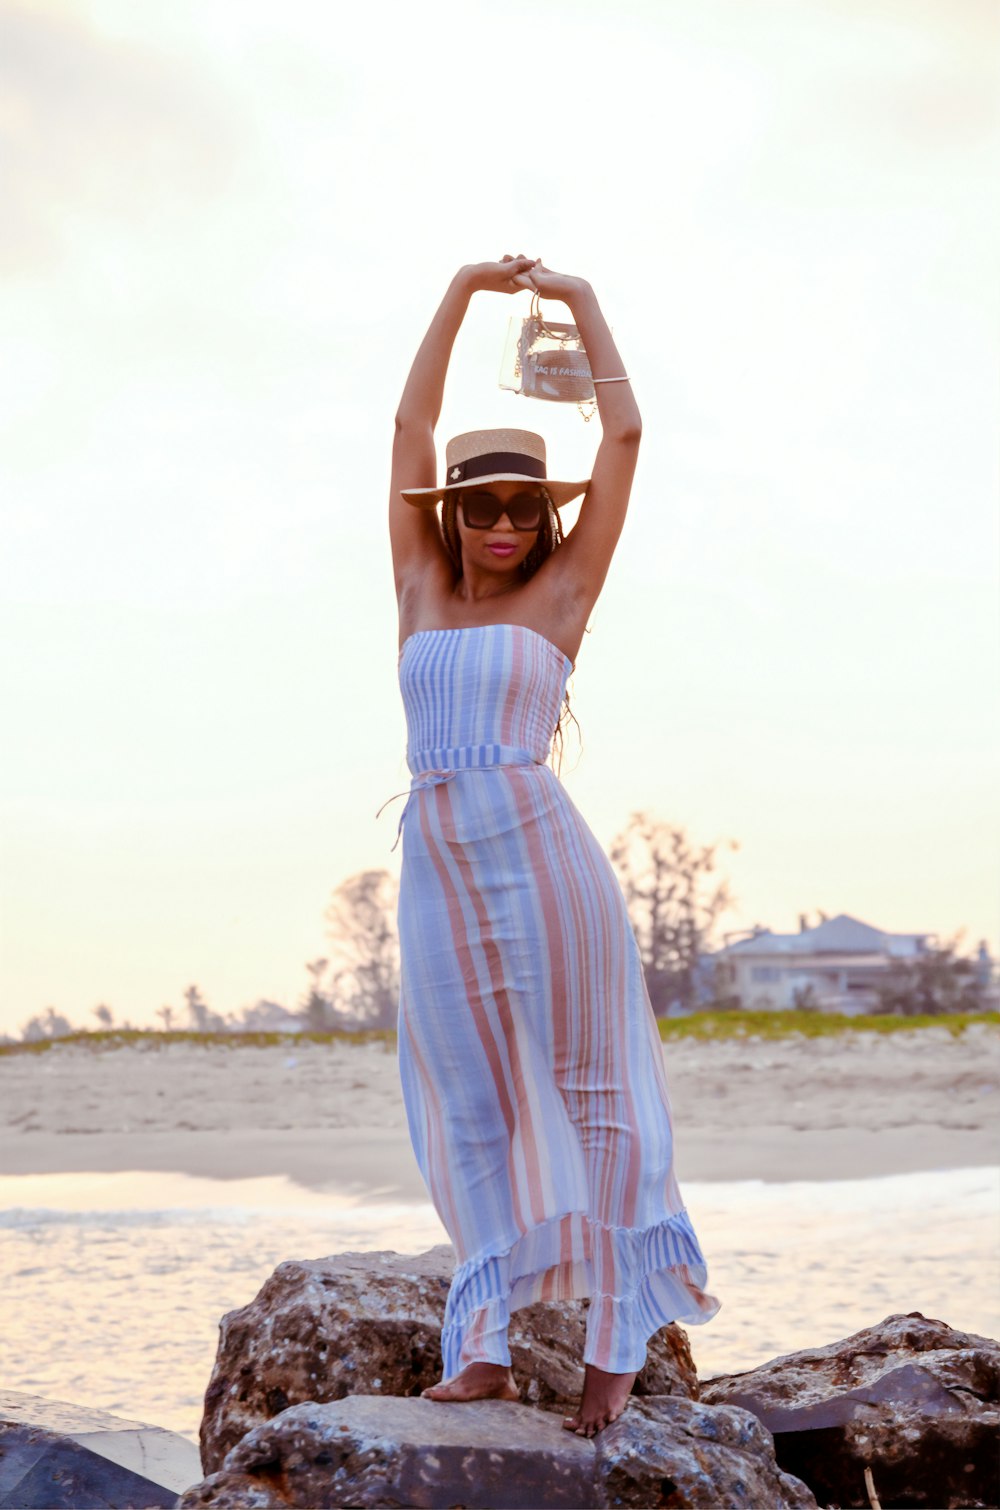 Mujer con vestido de rayas blancas y rosas con gafas de sol blancas de pie en la playa durante el día